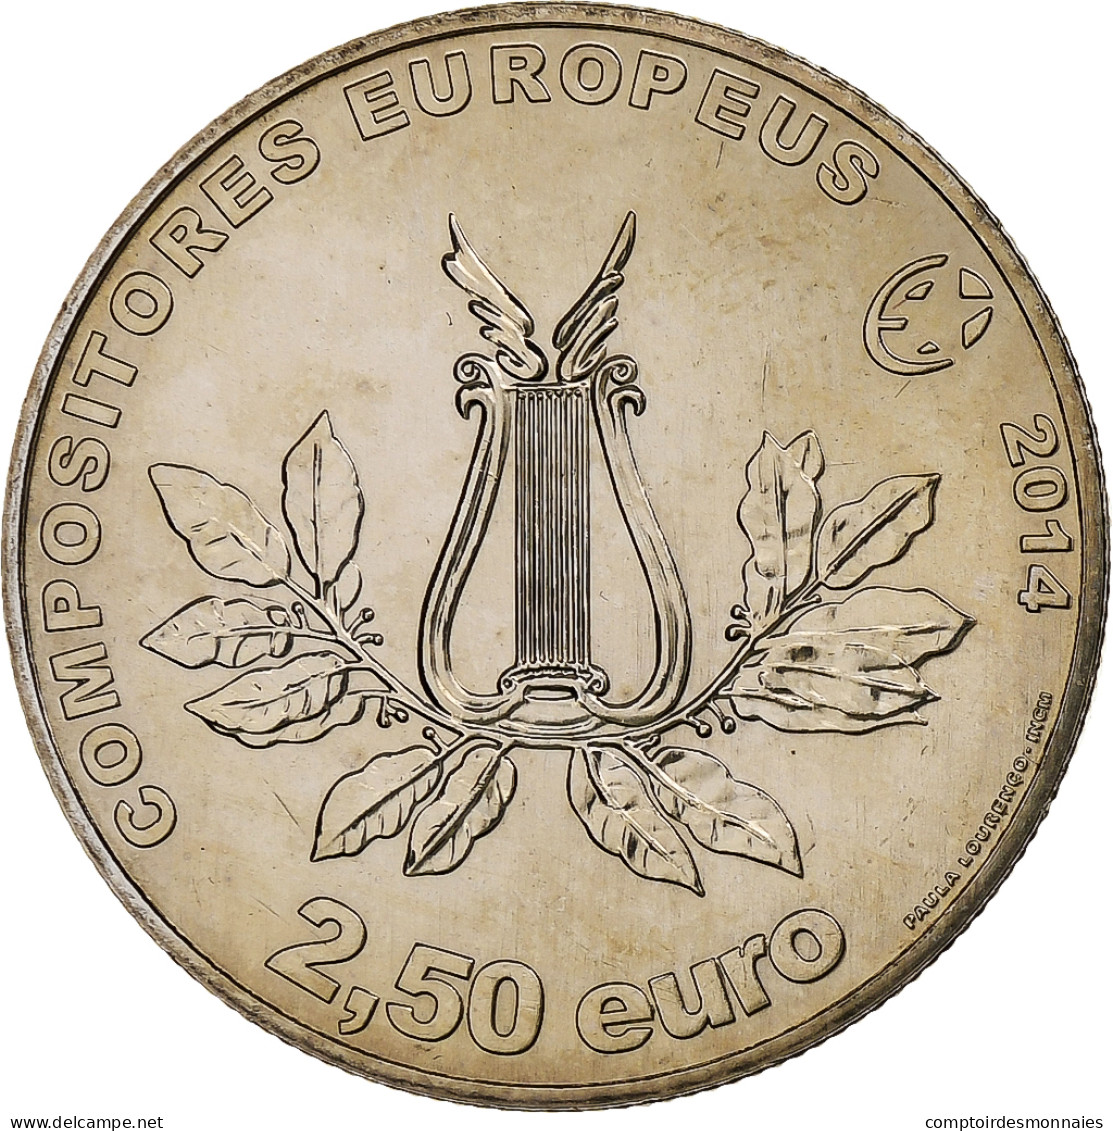 Portugal, 2,5 Euro, Marcos Portugal, 2014, Lisbonne, Cupro-nickel, SPL - Portugal